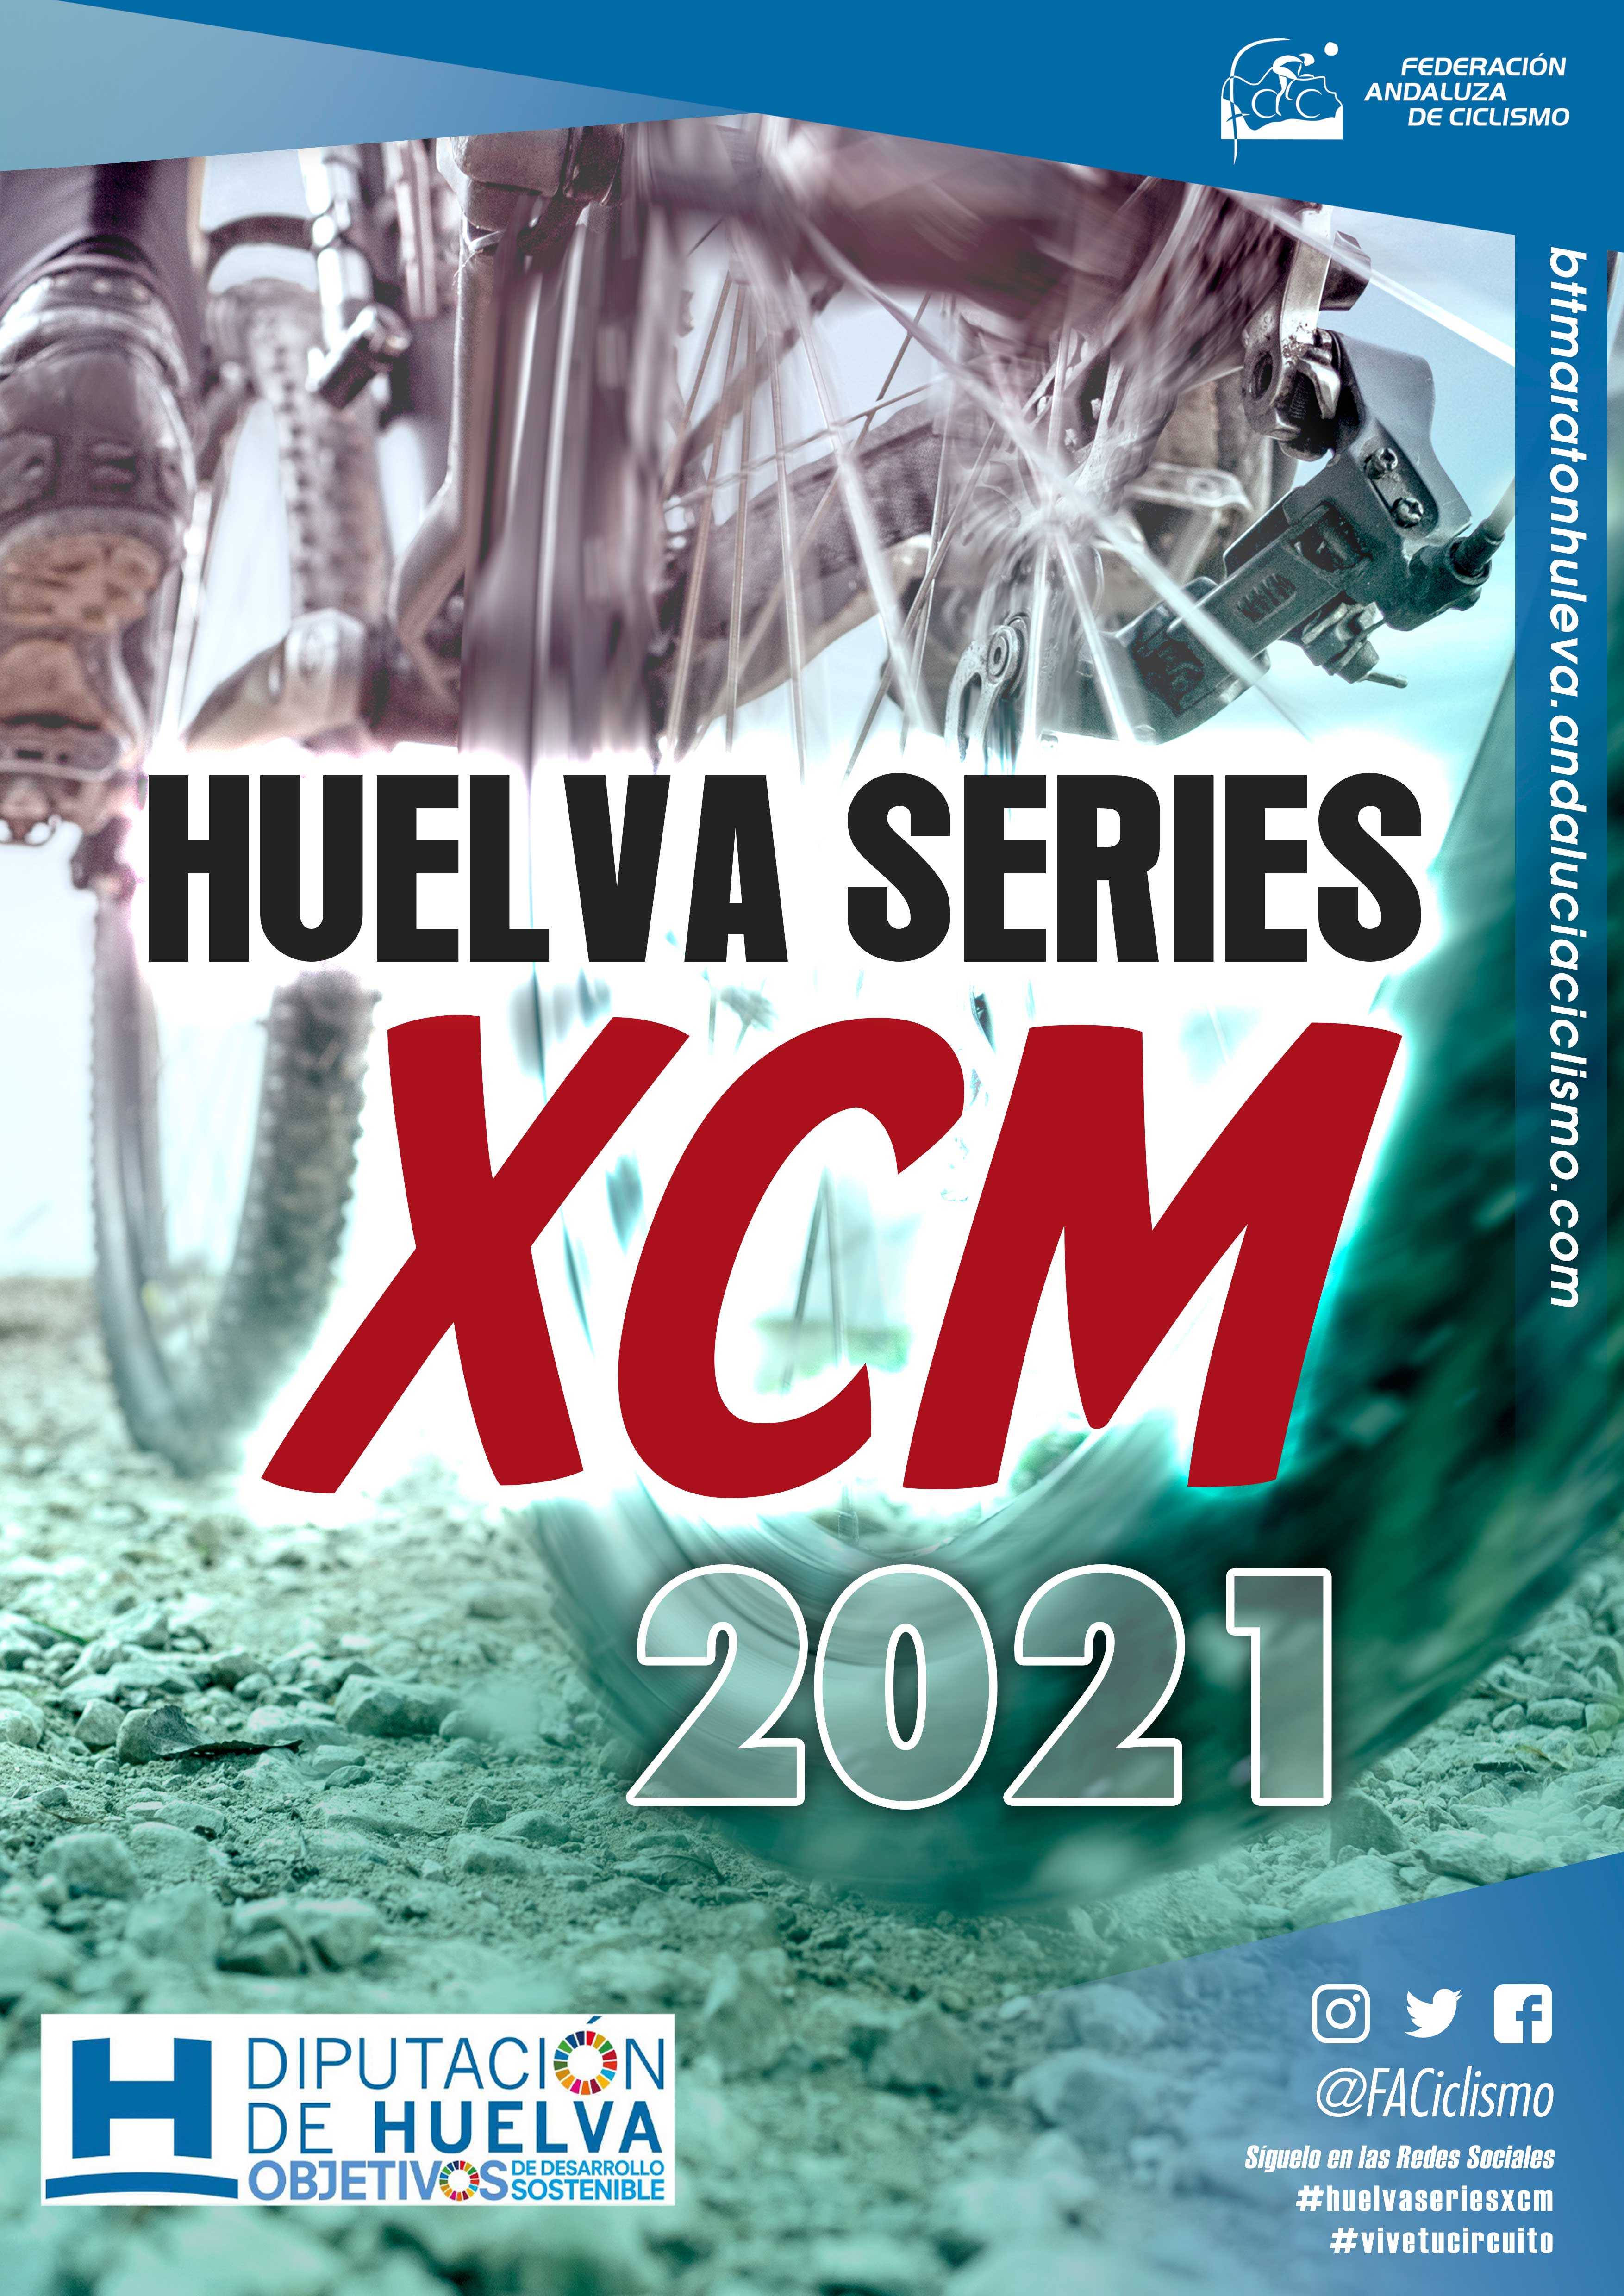 Fechas de las ‘Huelva Series XCM 2021’